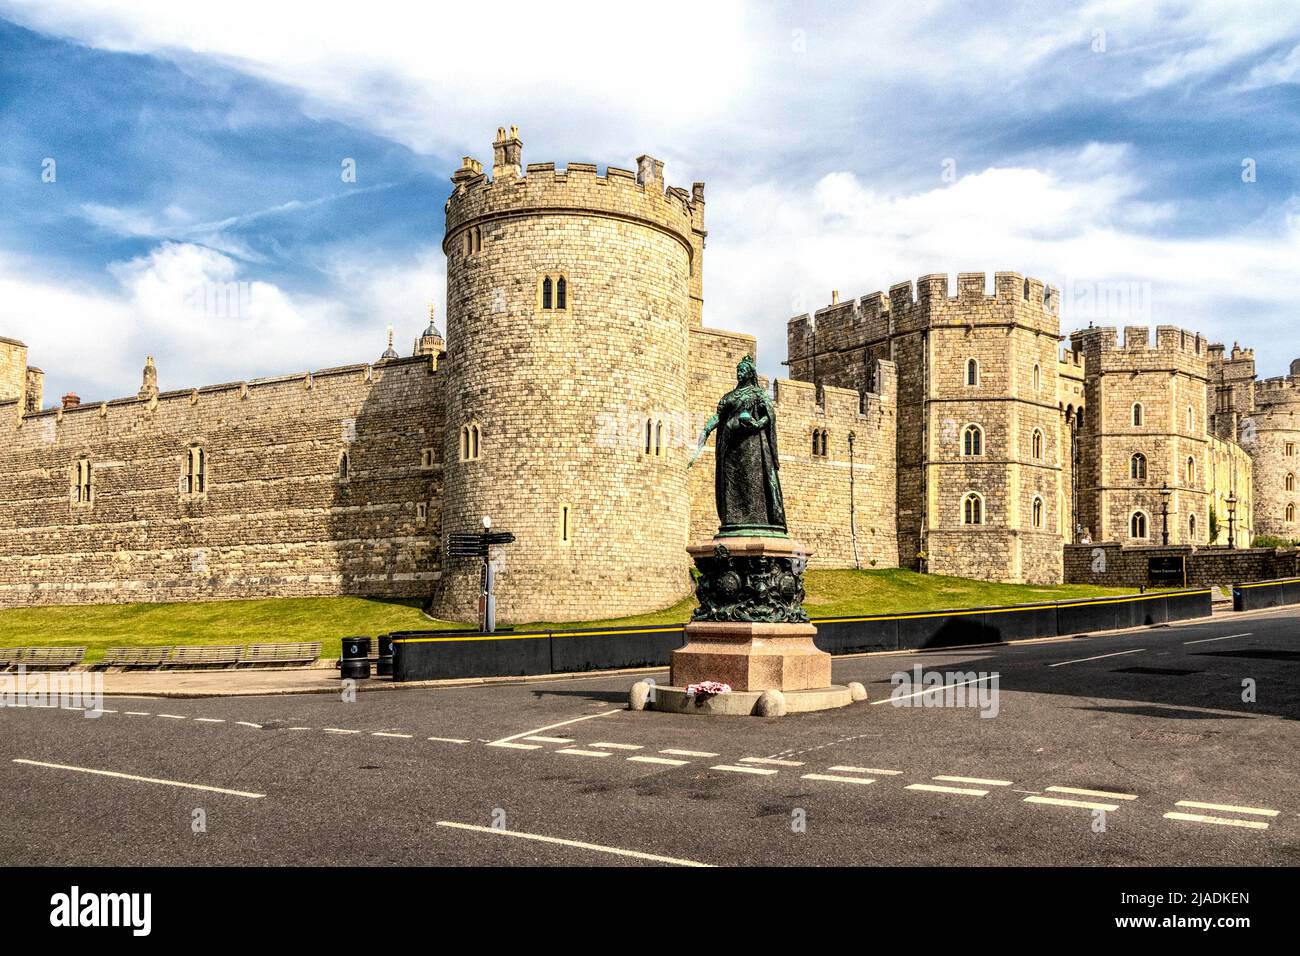 Statue de la reine Victoria à l'extérieur, château de Windsor, Berkshire, Angleterre, Royaume-Uni Banque D'Images